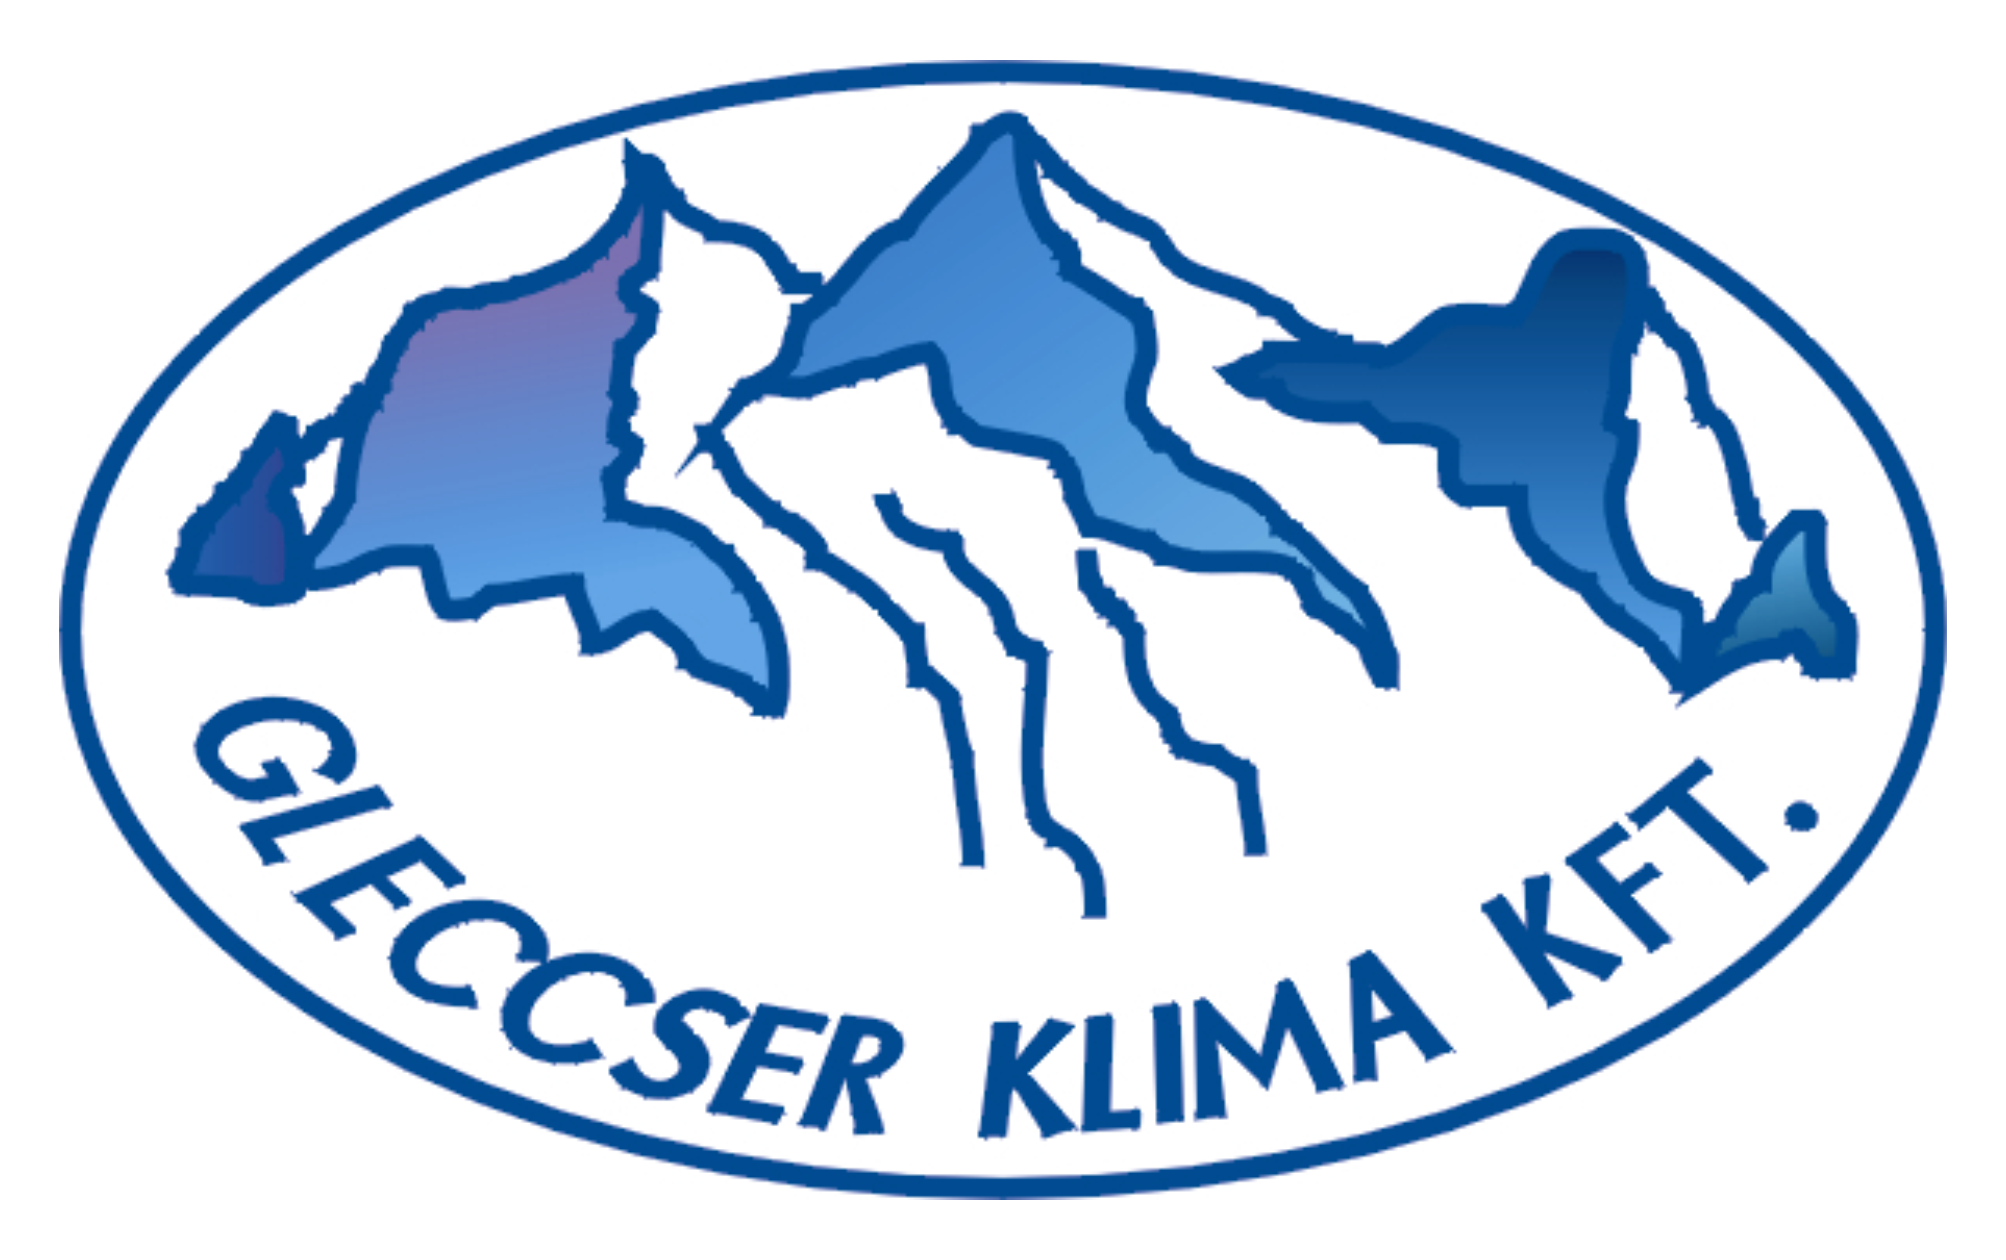 Gleccser Klíma logo